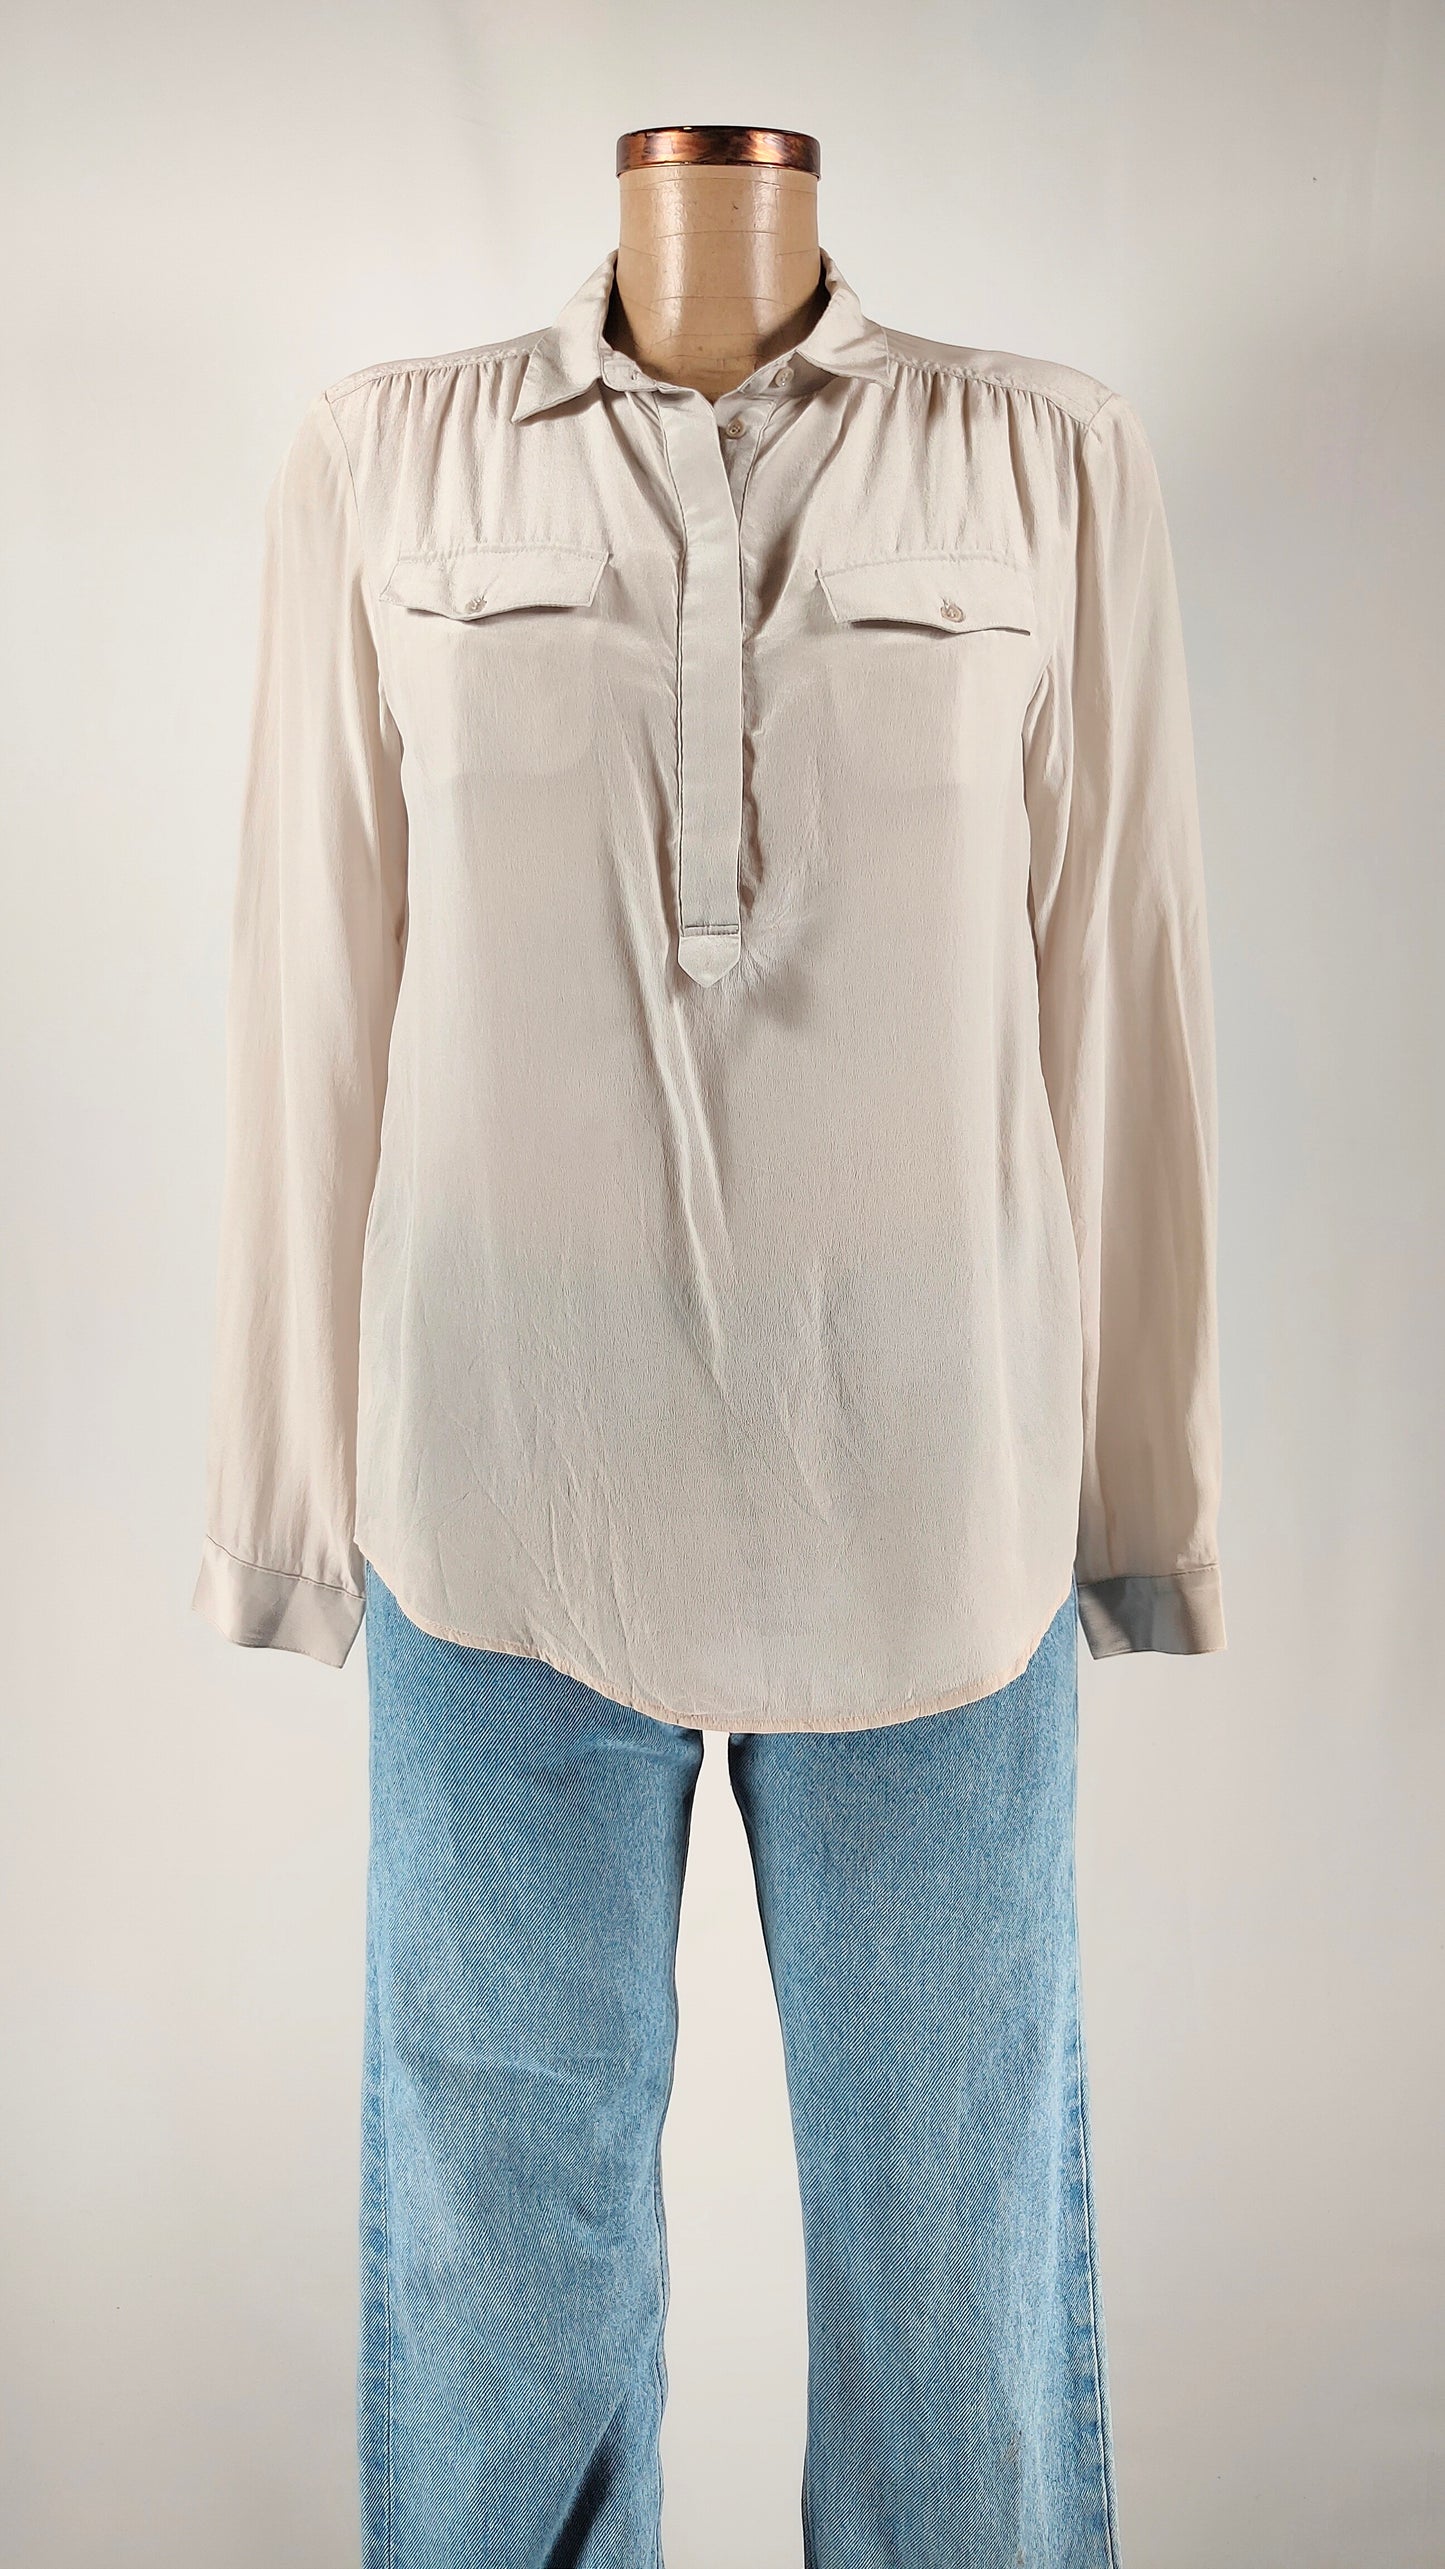 Camisa Comptoir des cotonniers de seda